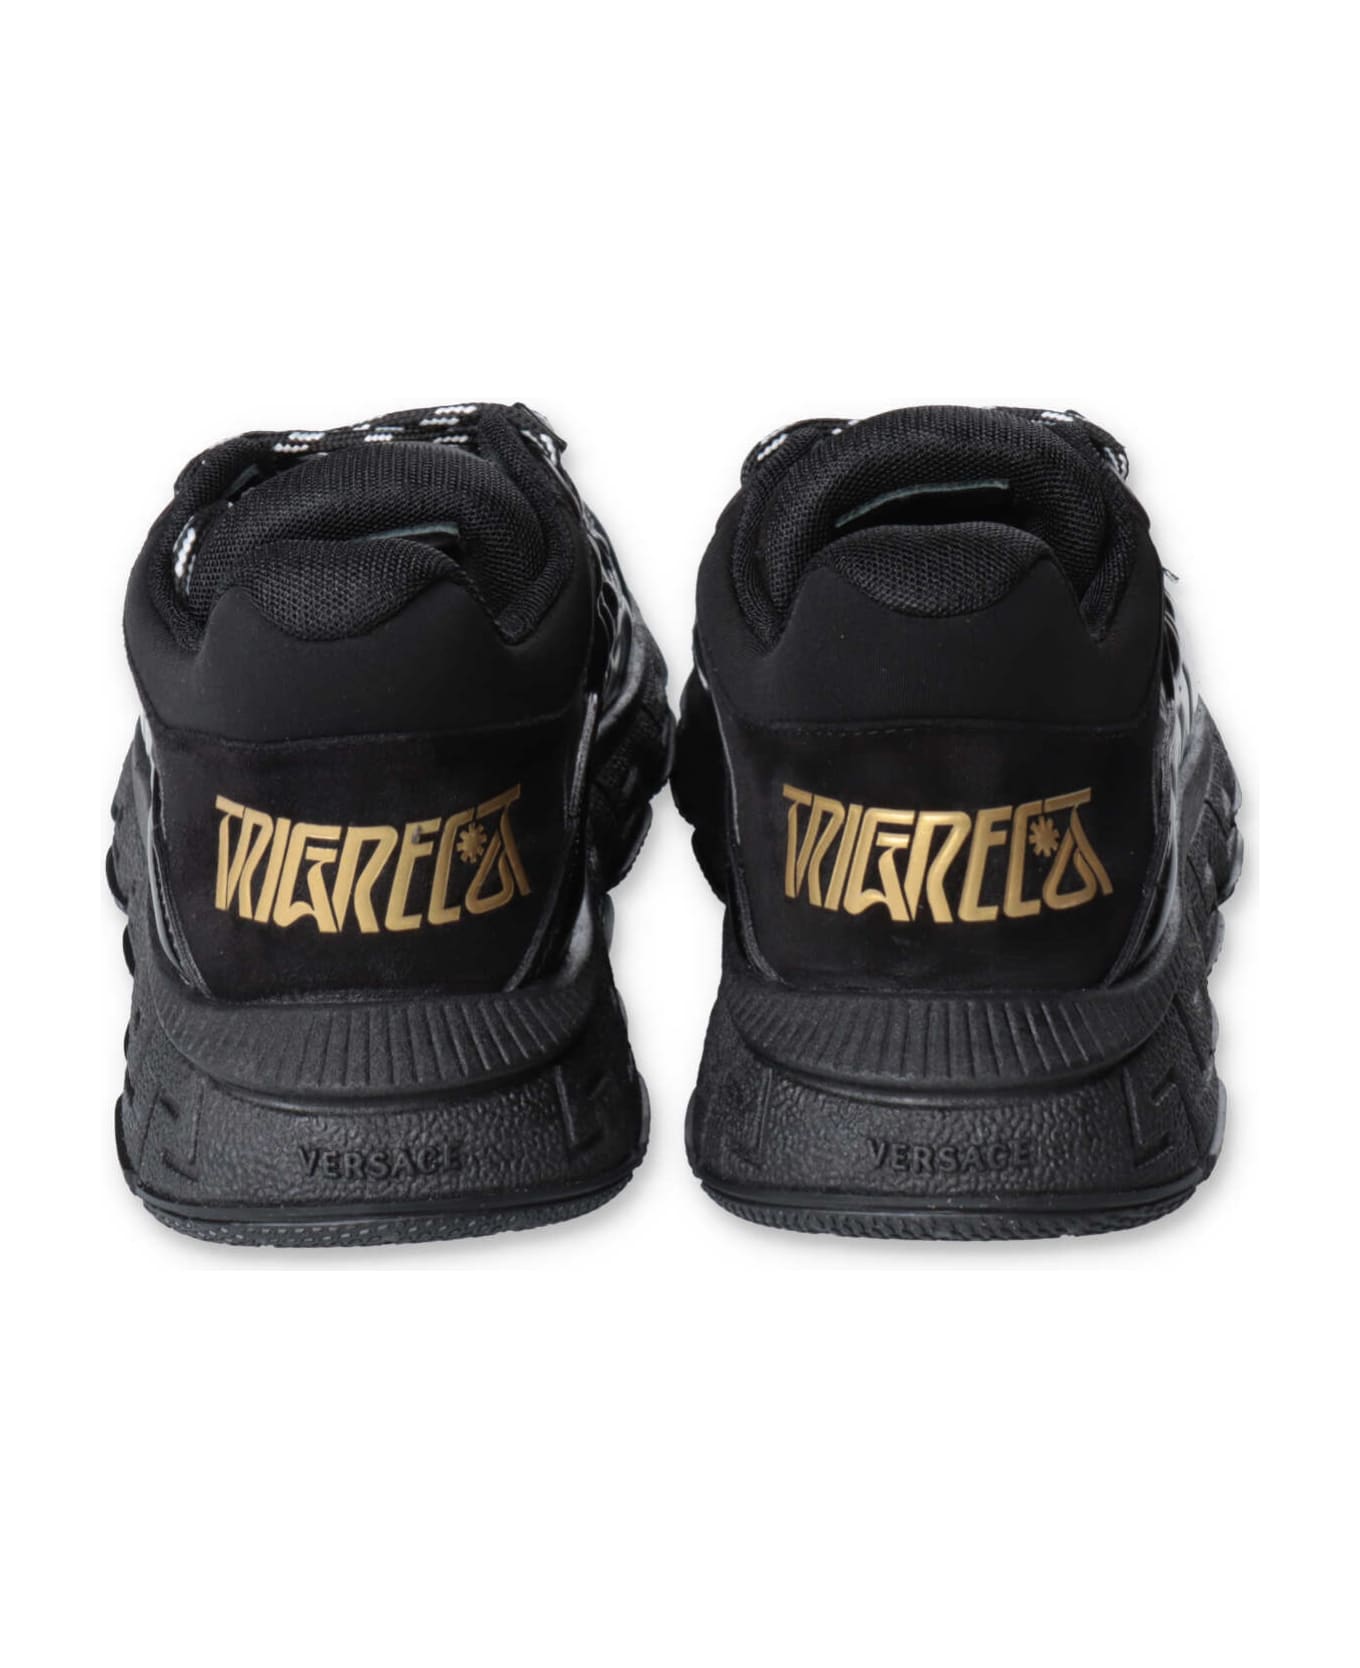 Versace Sneakers Nera In Pelle Di Vitello Bambino - Nero シューズ